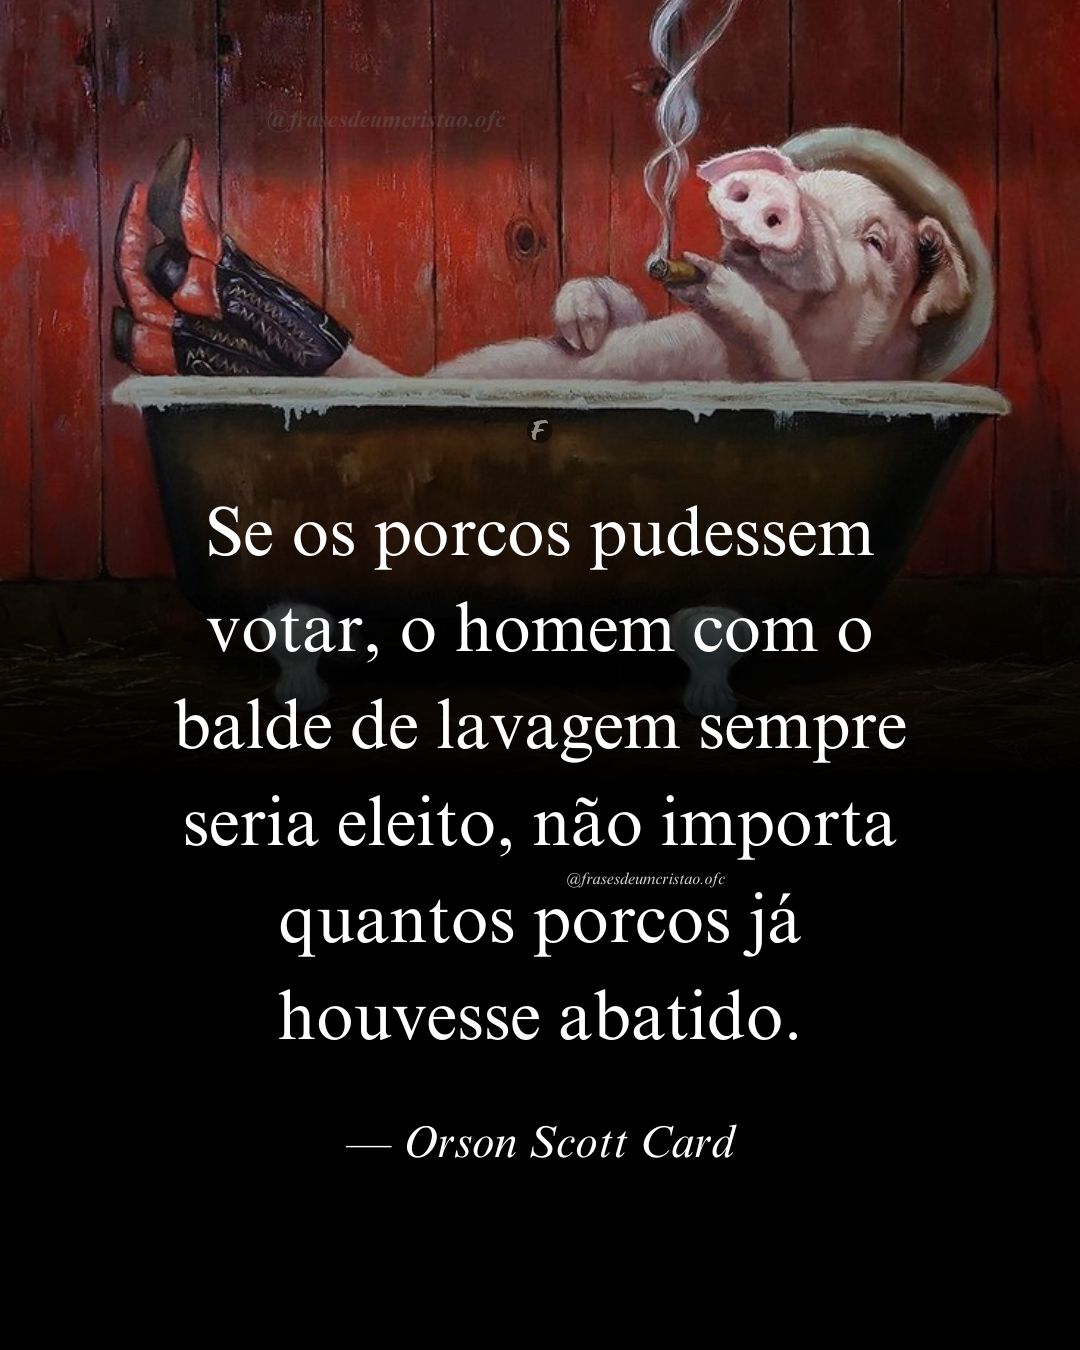 Se os porcos pudessem votar, o homem com o balde de lavagem sempre seria eleito, não importa quantos porcos já houvesse abatido. — Orson Scott Card